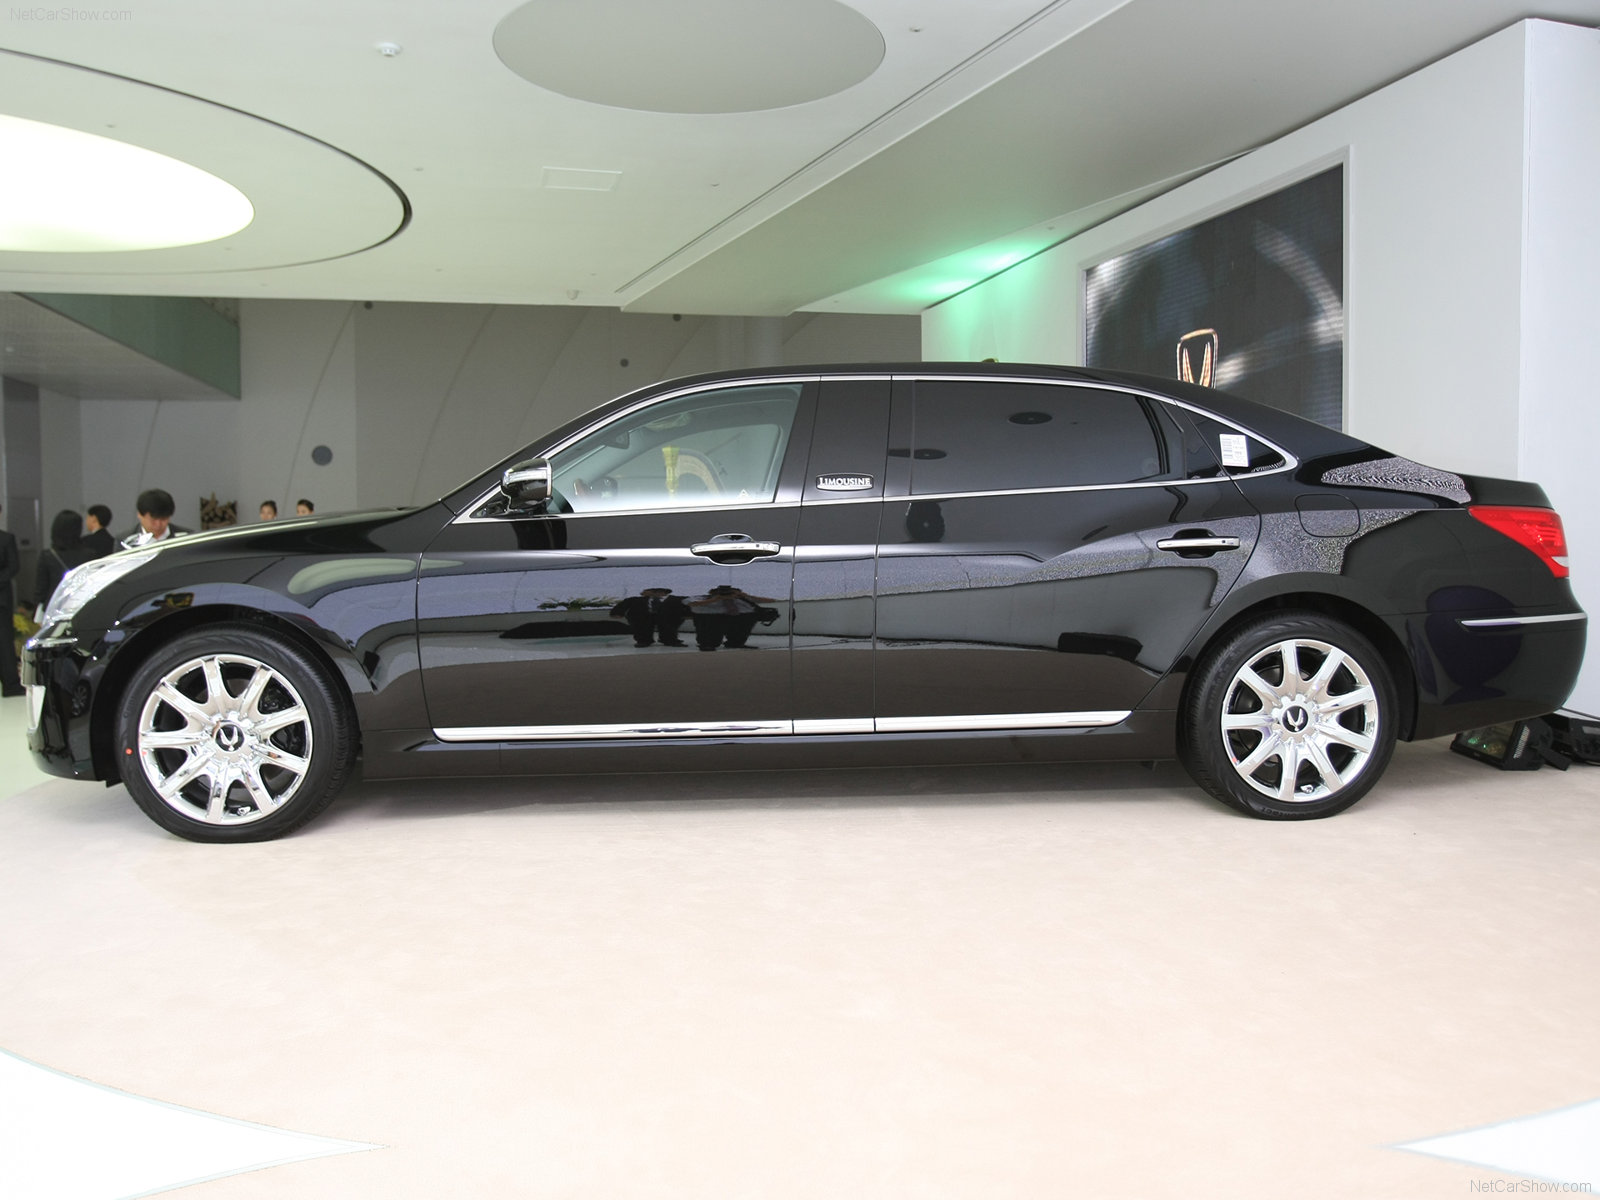 Hàng hiếm Hyundai Equus rao bán 1,4 tỷ: Người bán thổ lộ 'ngang ngửa Maybach, từng được Tổng thống Hàn sử dụng' - Ảnh 4.